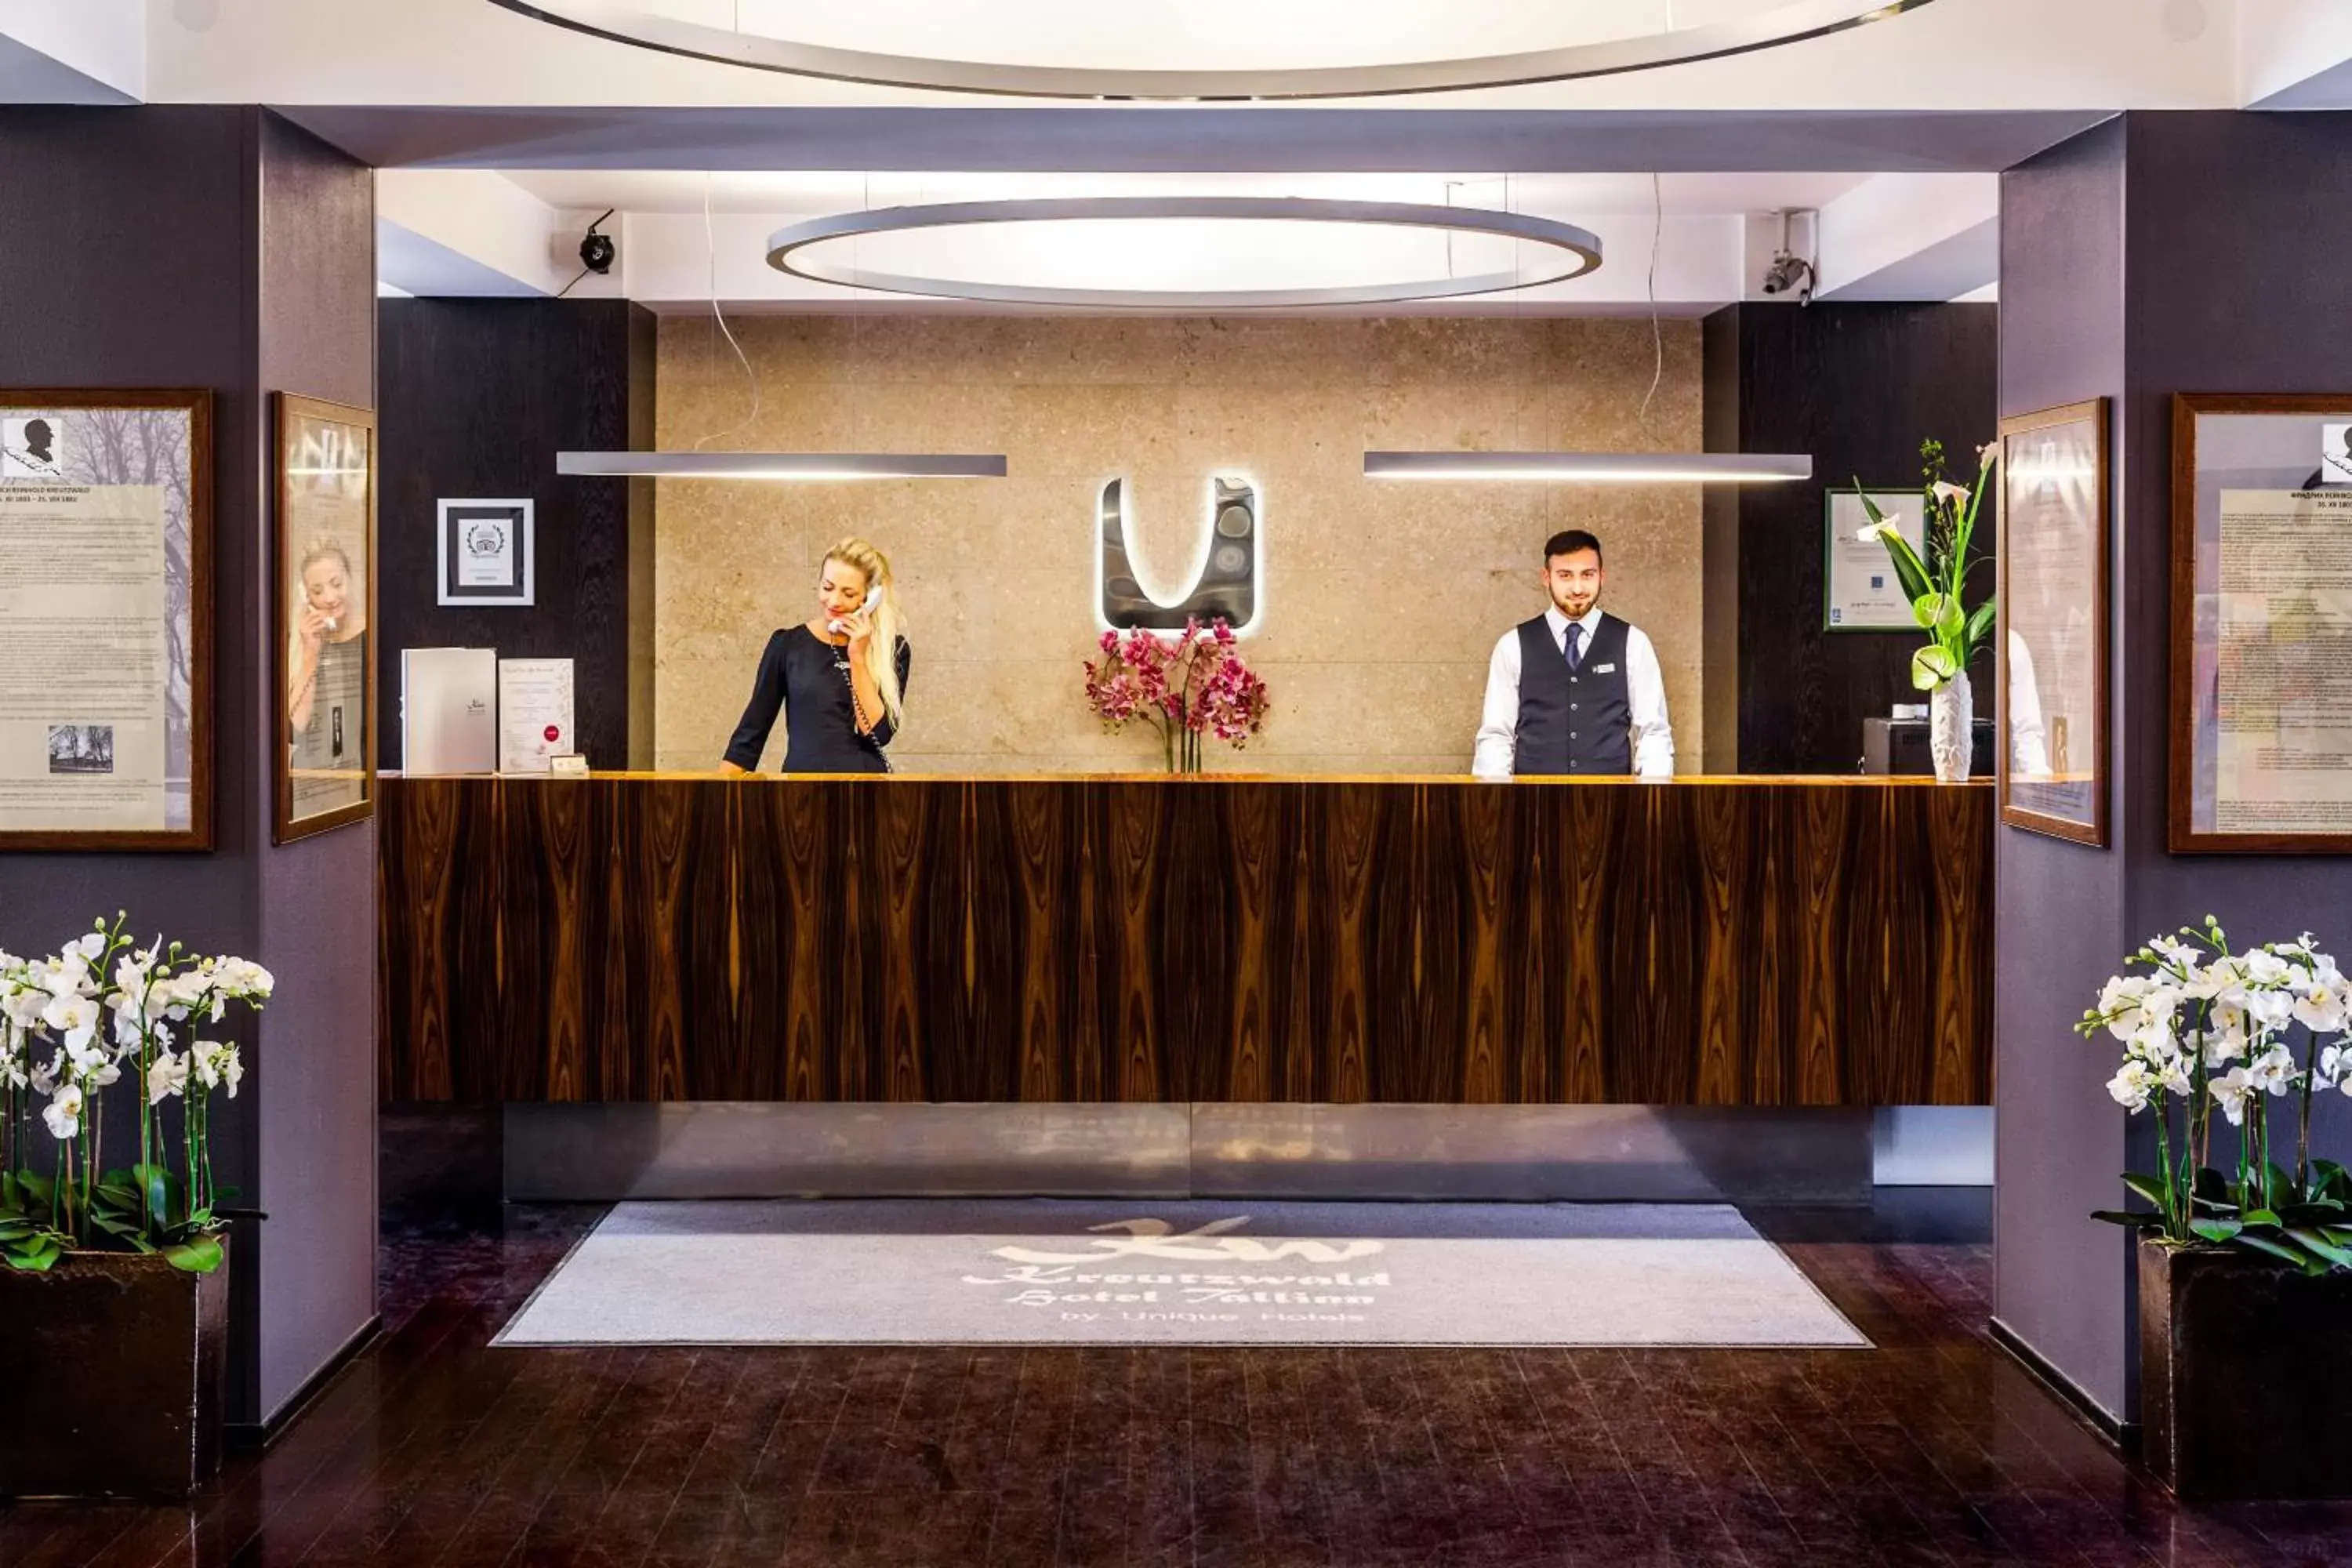 Lobby or reception, Lobby/Reception in Kreutzwald Hotel Tallinn